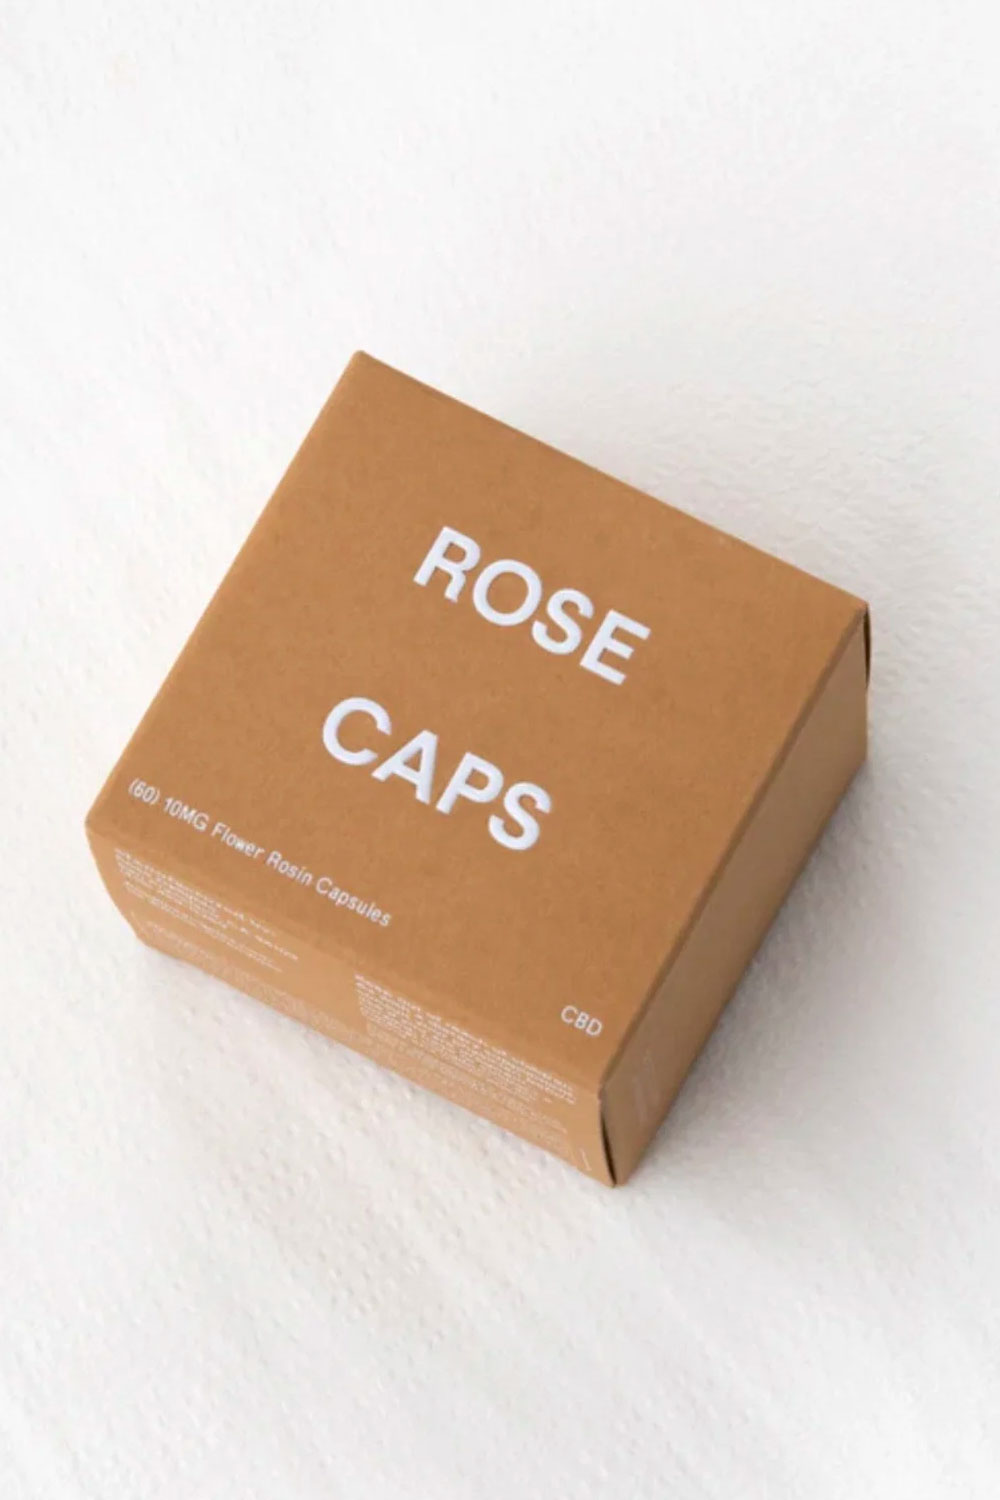 Rose Caps | Pure CBD Rosin Capsules